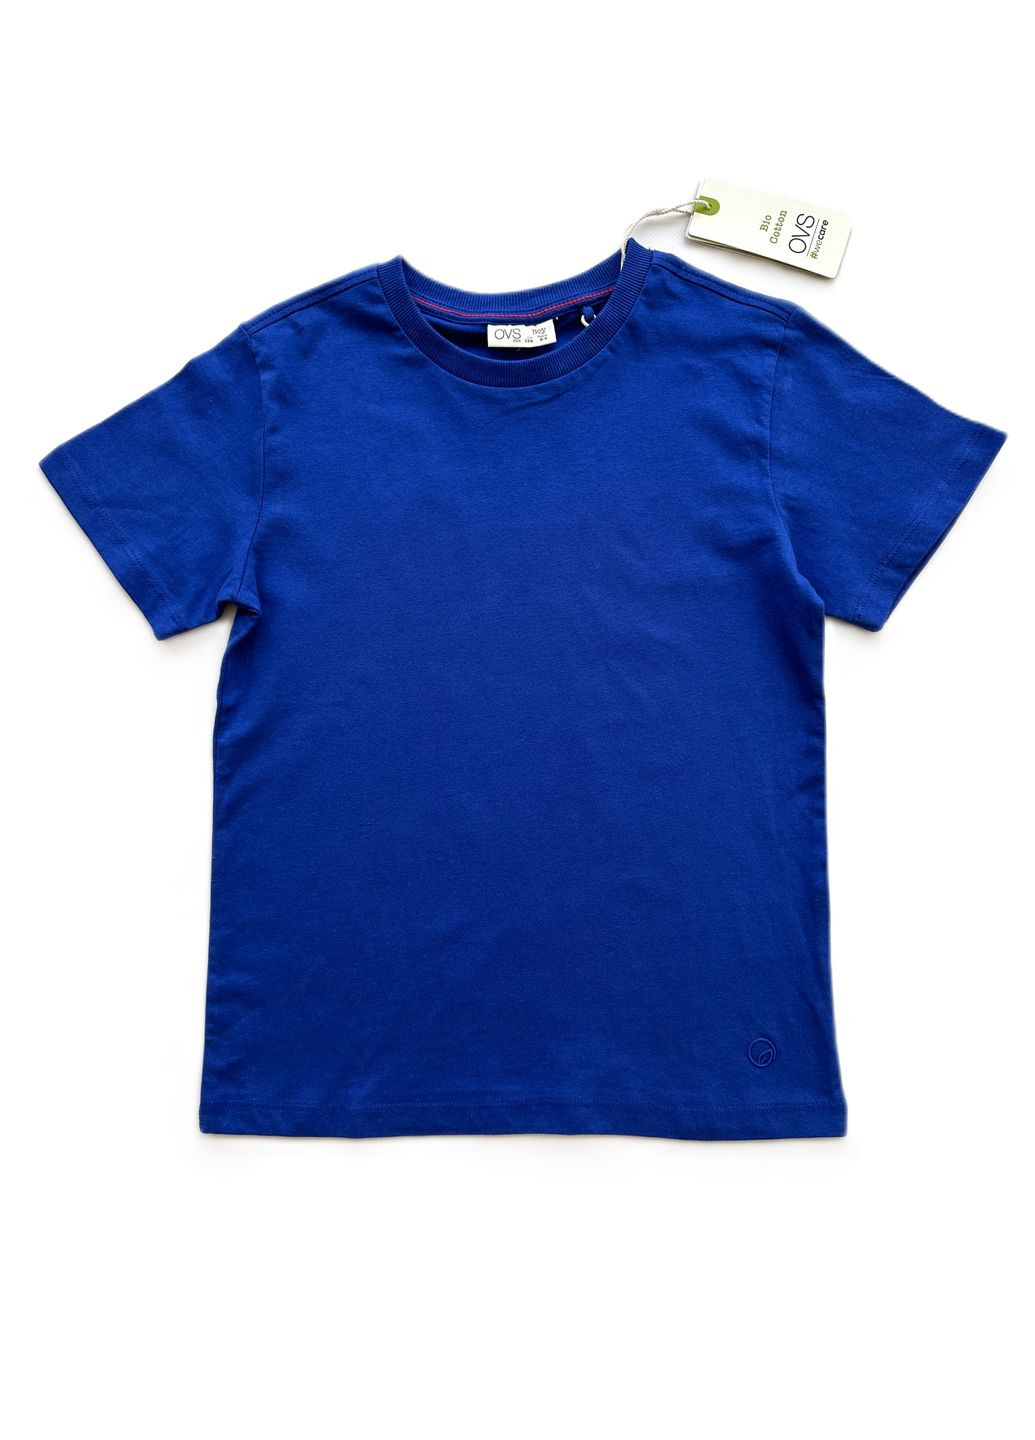 Синя літня комплект (2шт) футболки для хлопця синя + сіра з написами 2000-40/2000-41 (134 см) OVS